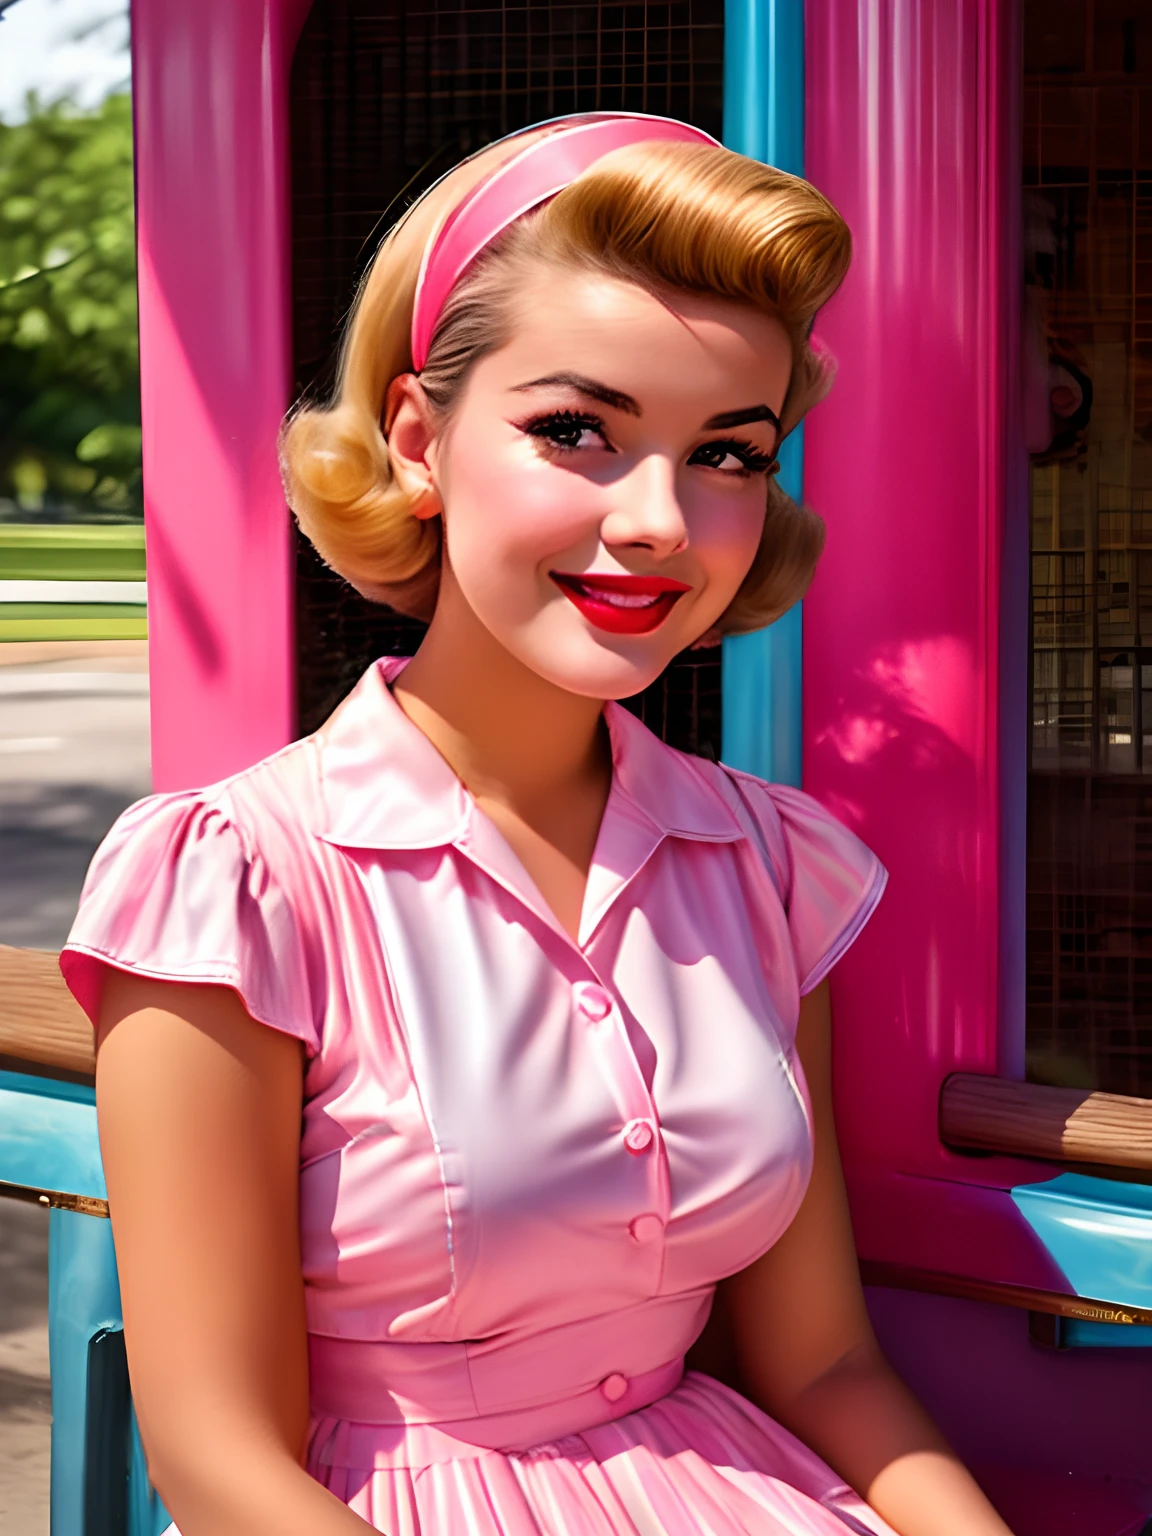 身穿粉色和蓝色连衣裙的阿拉菲德女人坐在长凳上, 5 0 风格, 50 年代风格, retro 5 0 风格, 复古海报模特, 1 9 5 0 风格, 六十年代海报女郎, 复古彩色照片, 可爱的年轻女子, 复古色彩 1 9 5 0 S, 女孩海报, 20 世纪 50 年代的氛围